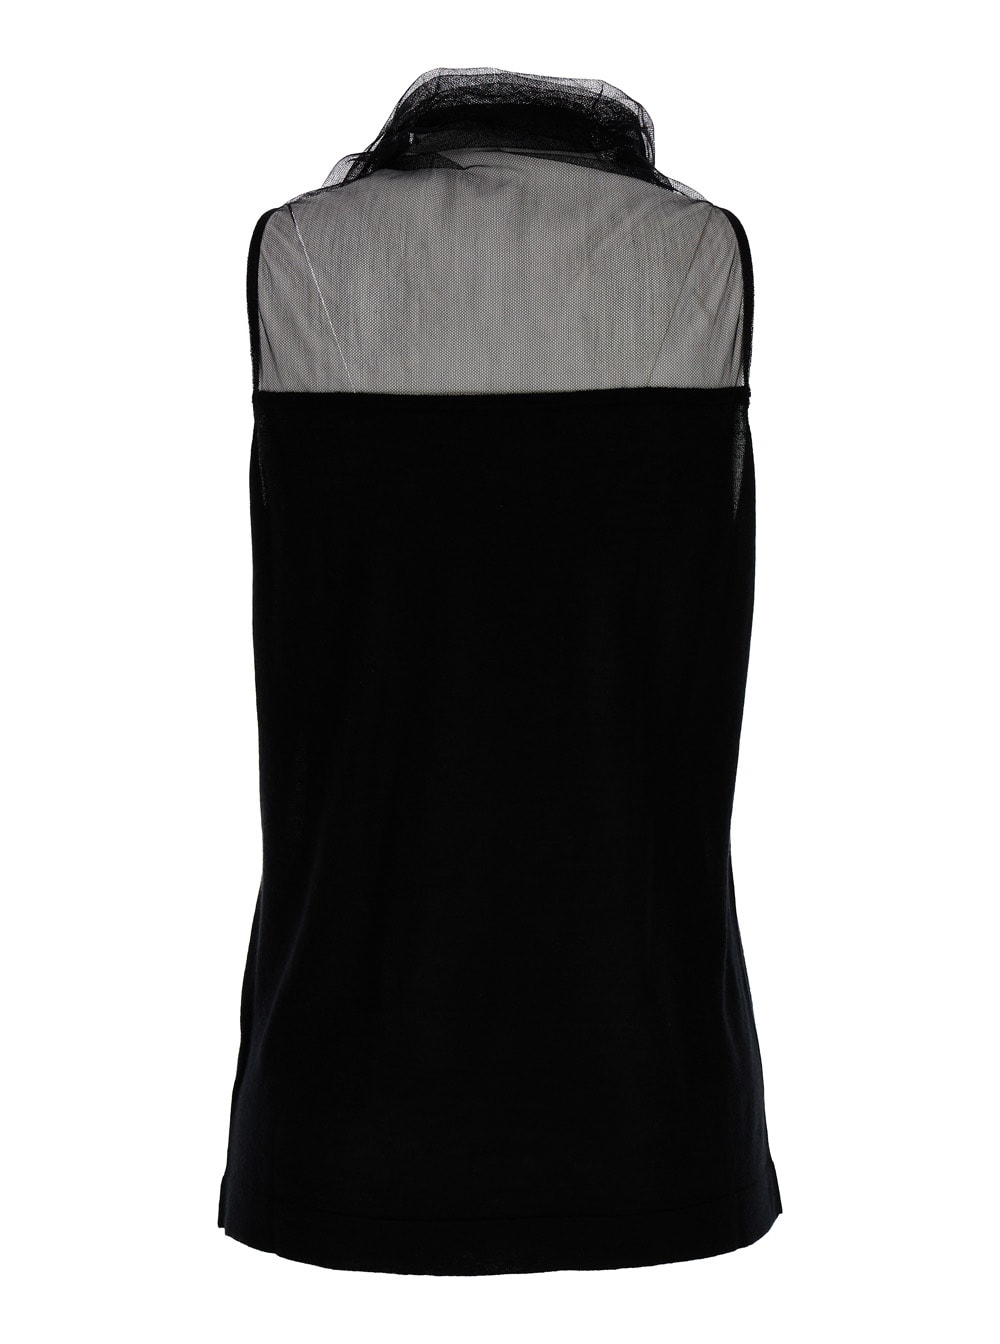 Shop Fabiana Filippi High Neck Black Top In Silk & Cashmere Blend Woman